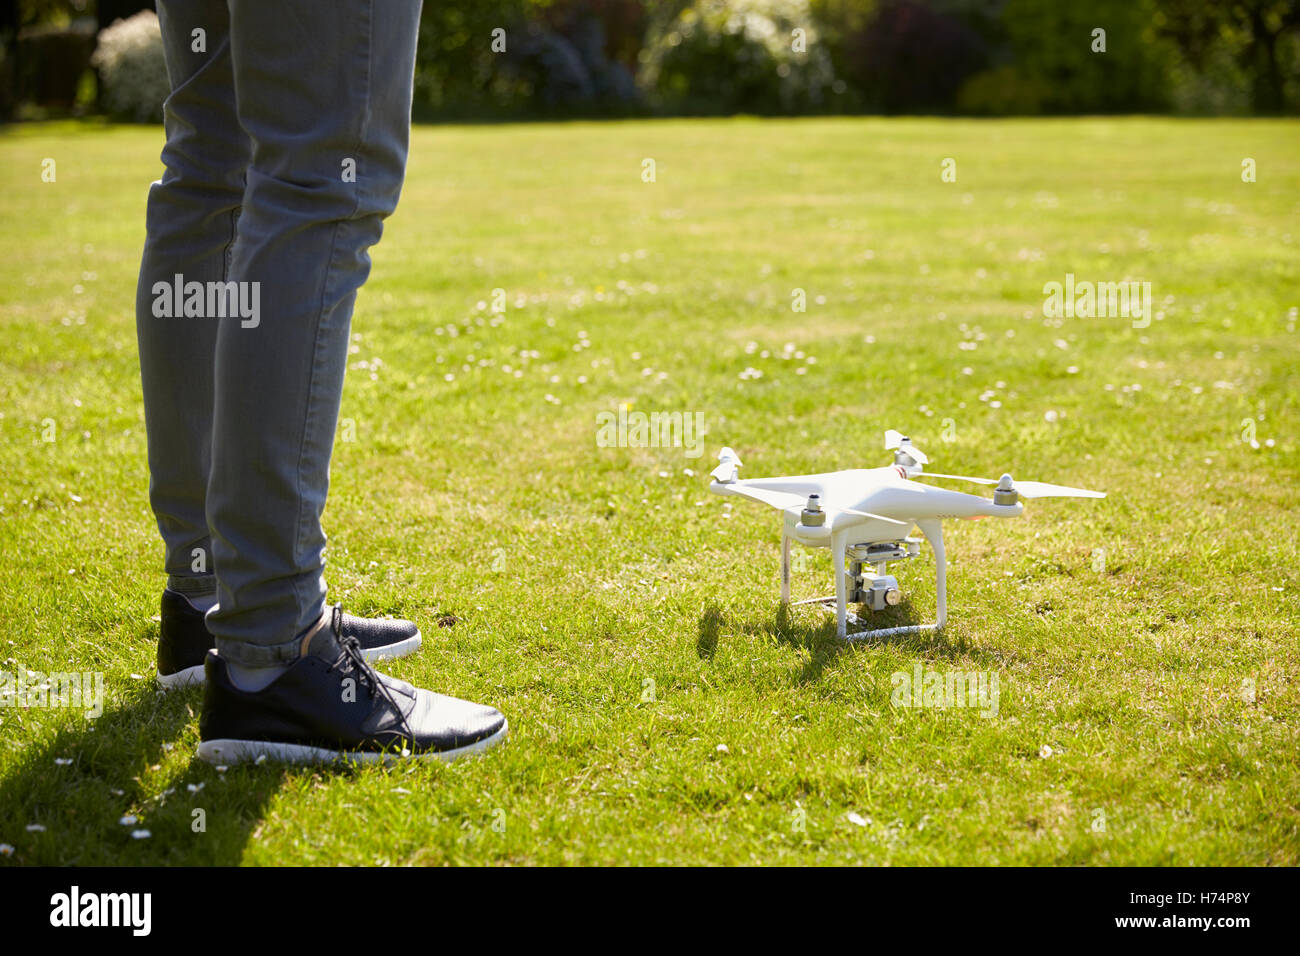 Nahaufnahme des Menschen fliegen Drone Quadcopter im Garten Stockfoto